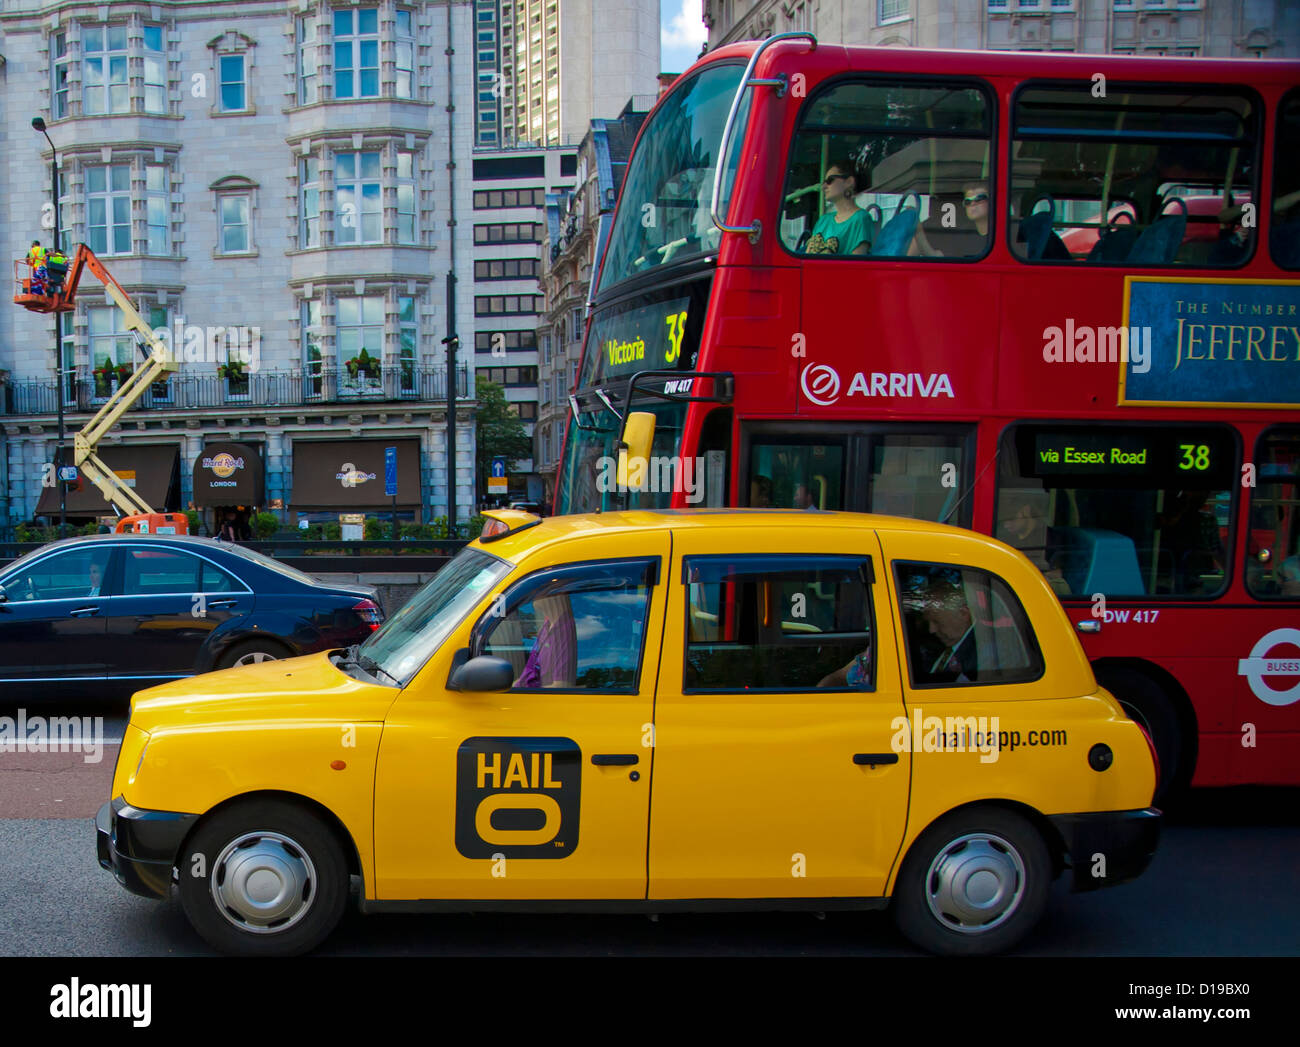 Taxi jaune et rouge sur le bus près de Piccadilly Green Park, City of Westminster, London, Greater London, Angleterre, Royaume-Uni Banque D'Images